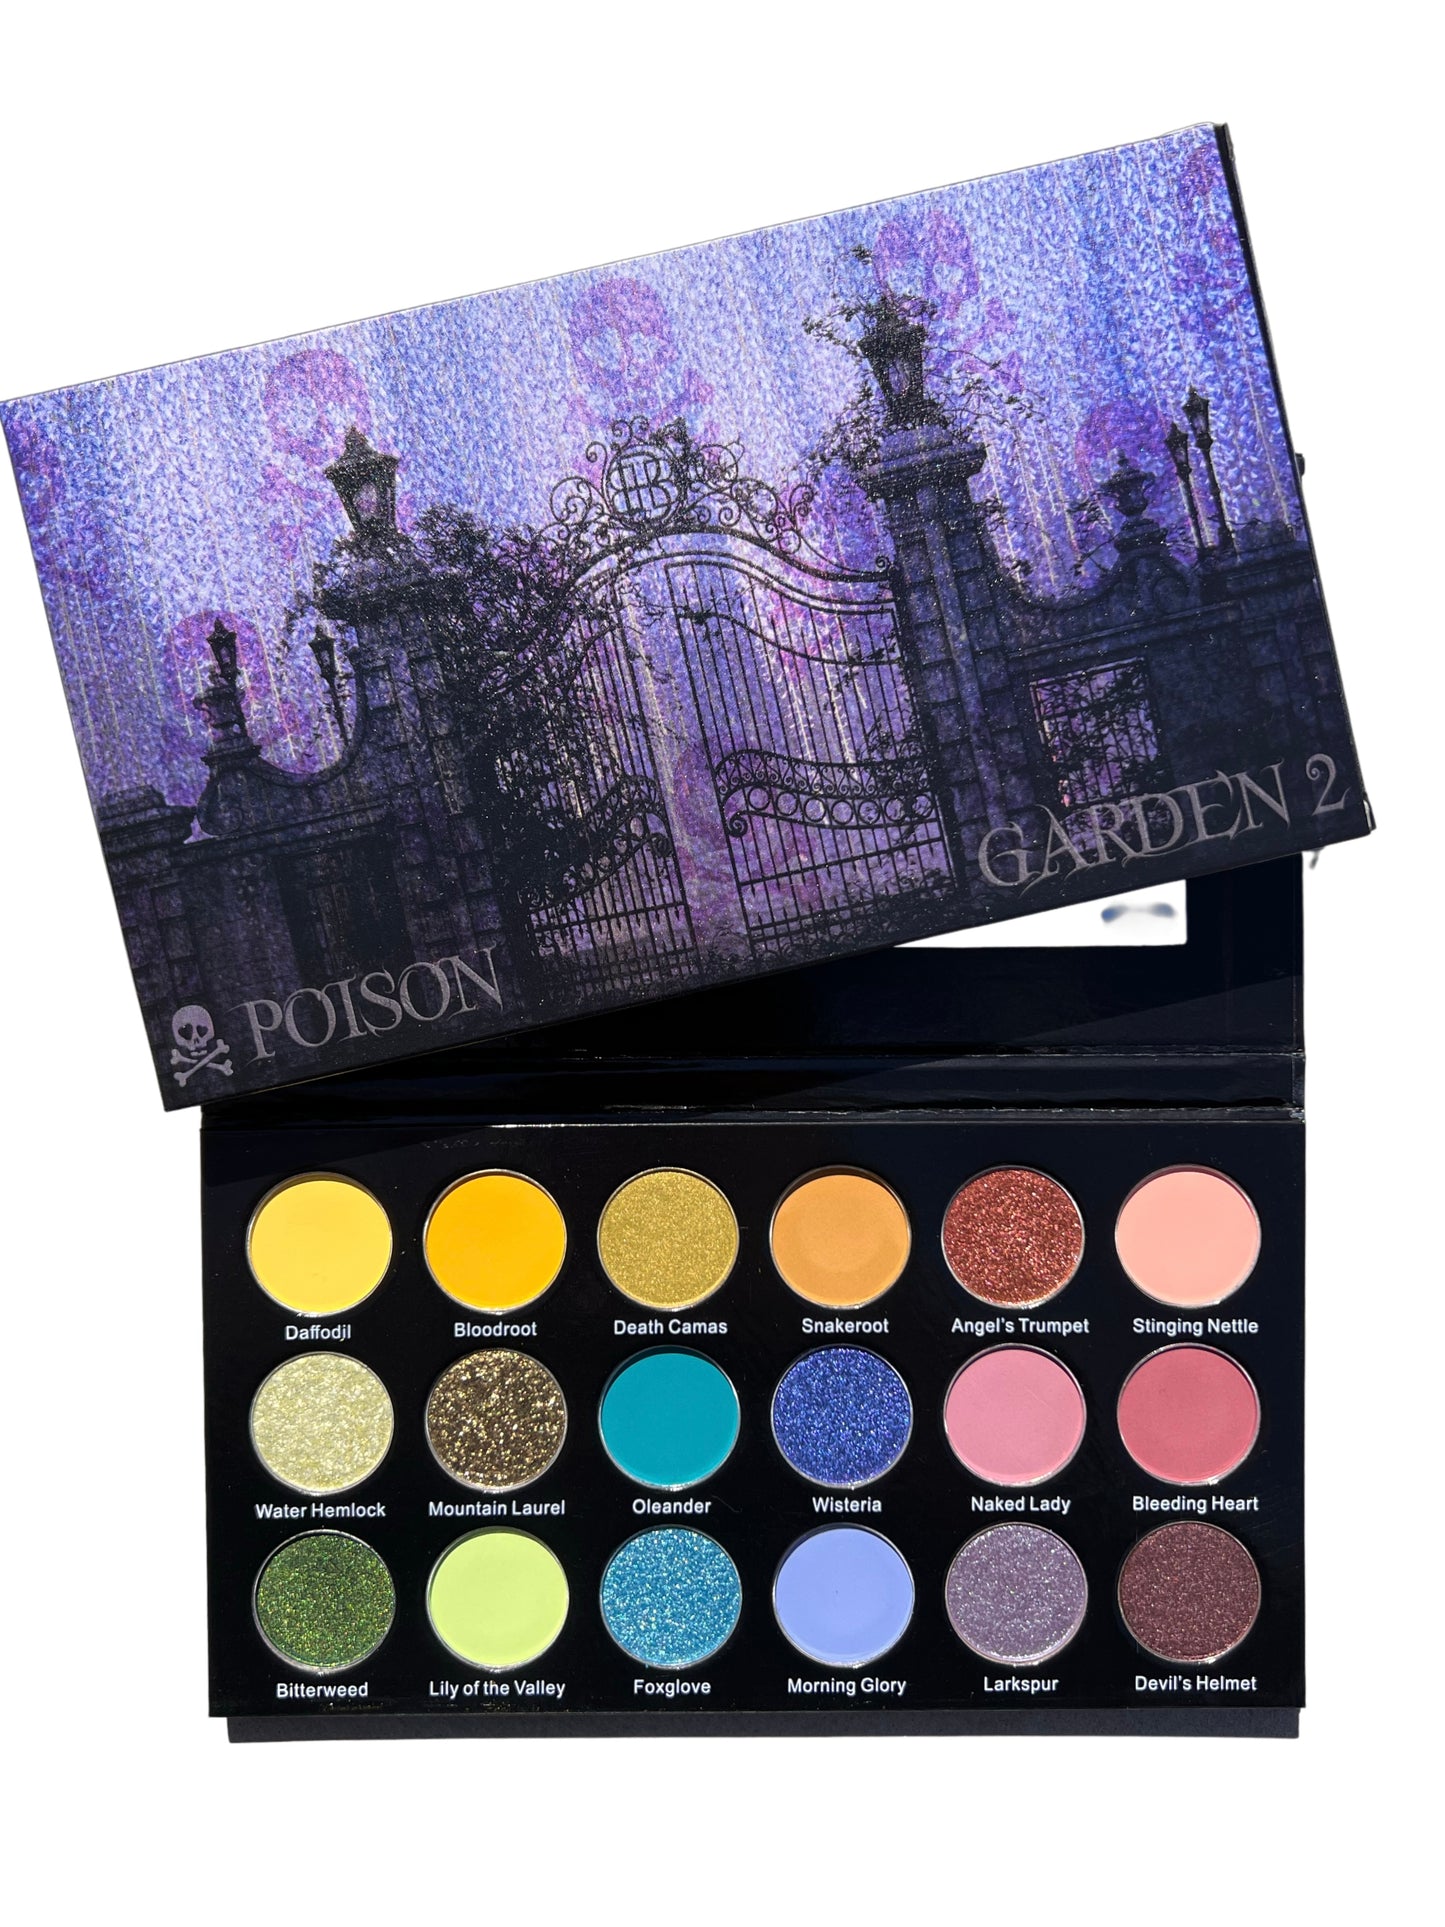 Poison Garden Volume 2 Eyeshadow Palette